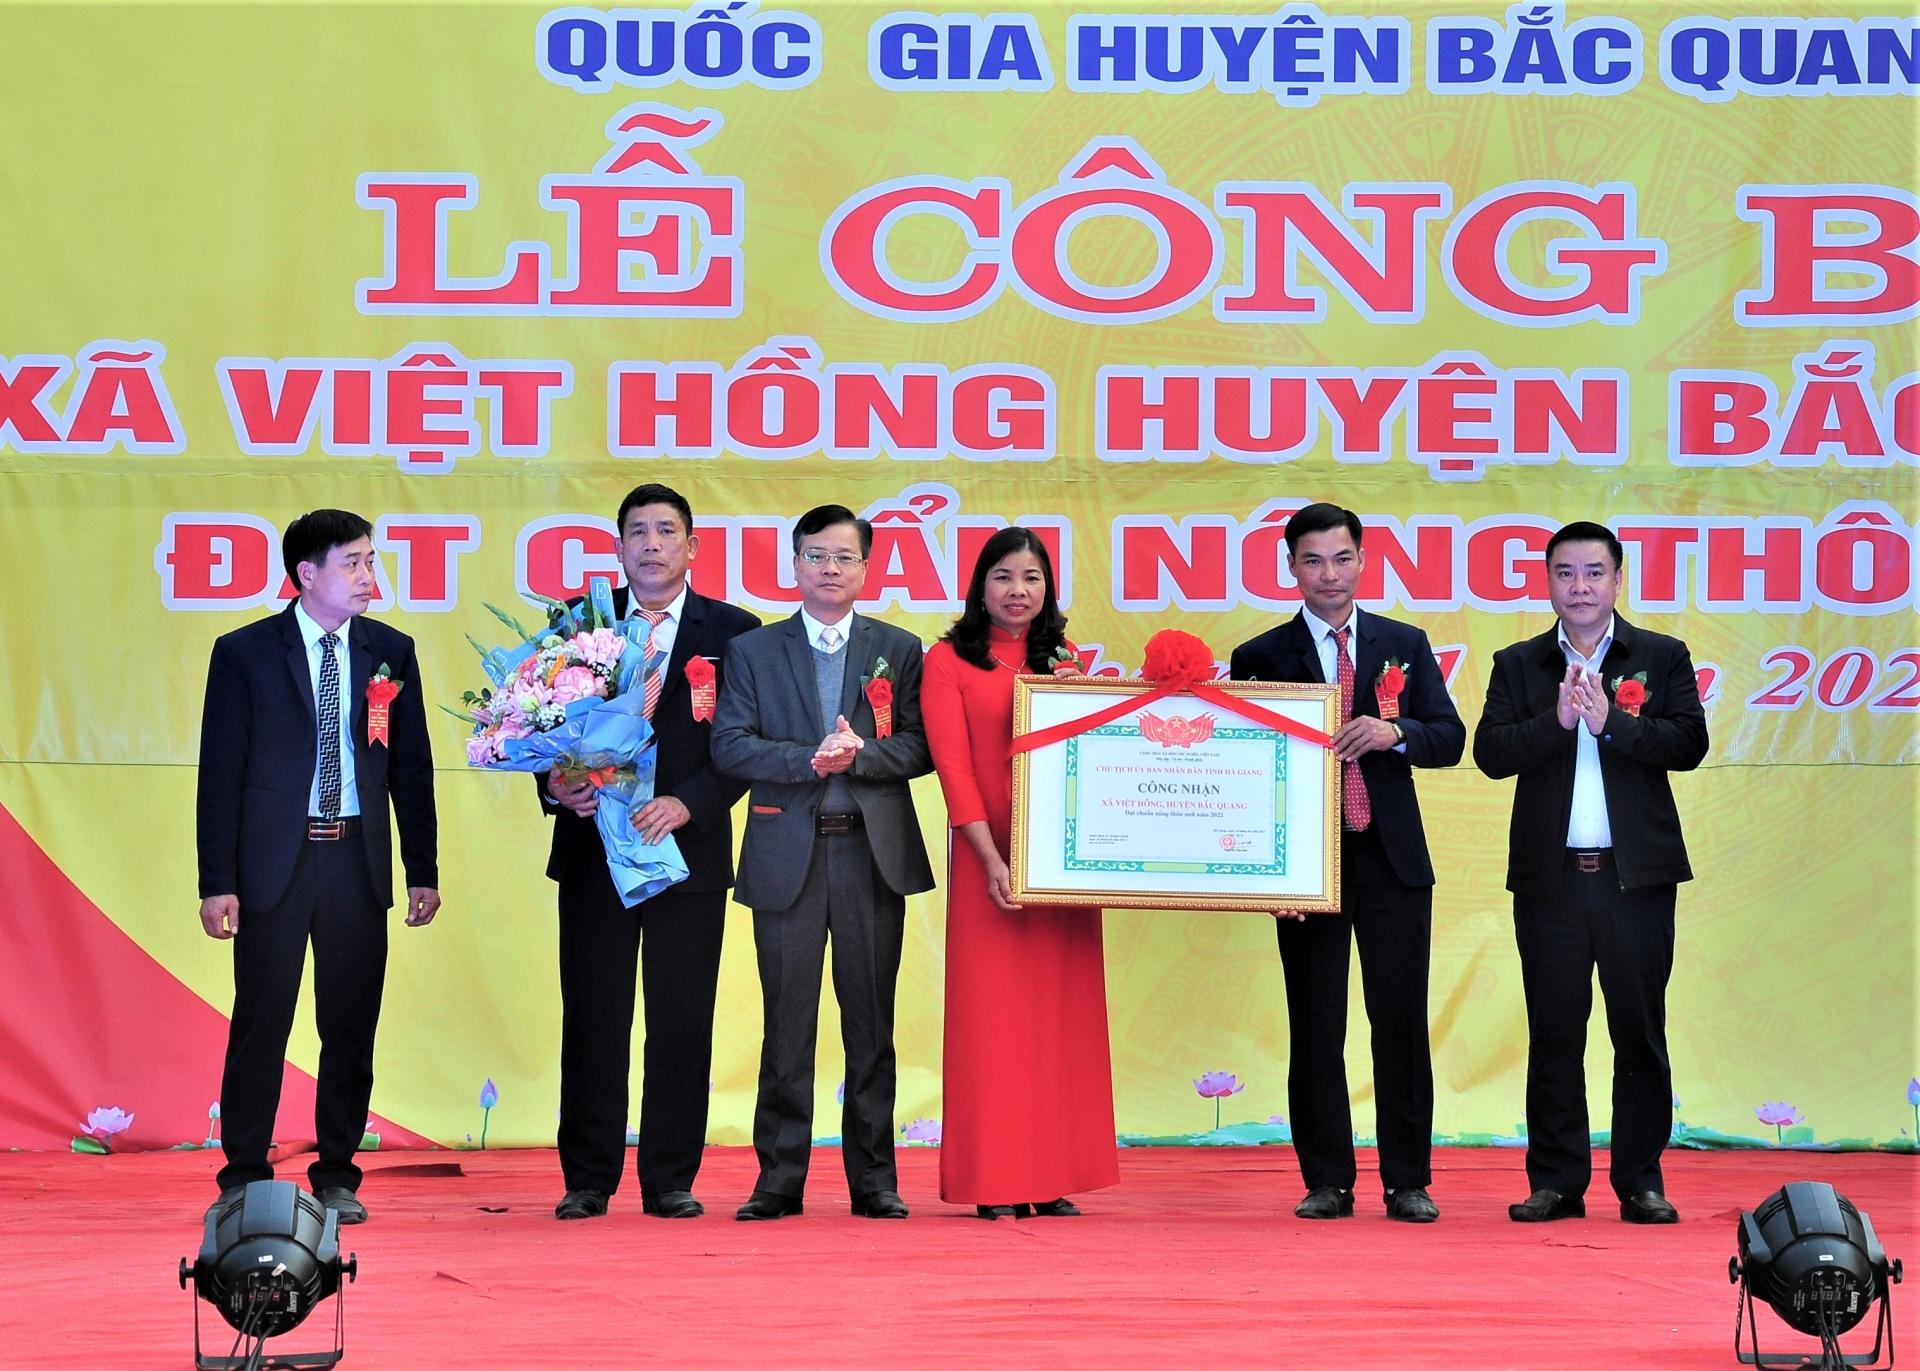 Thay mặt các đồng chí lãnh đạo tỉnh, Phó Chủ tịch Thường trực UBND tỉnh Hoàng Gia Long đã trao Bằng công nhận NTM của Chủ tịch UBND tỉnh cho Đảng bộ, chính quyền và nhân dân xã Việt Hồng.